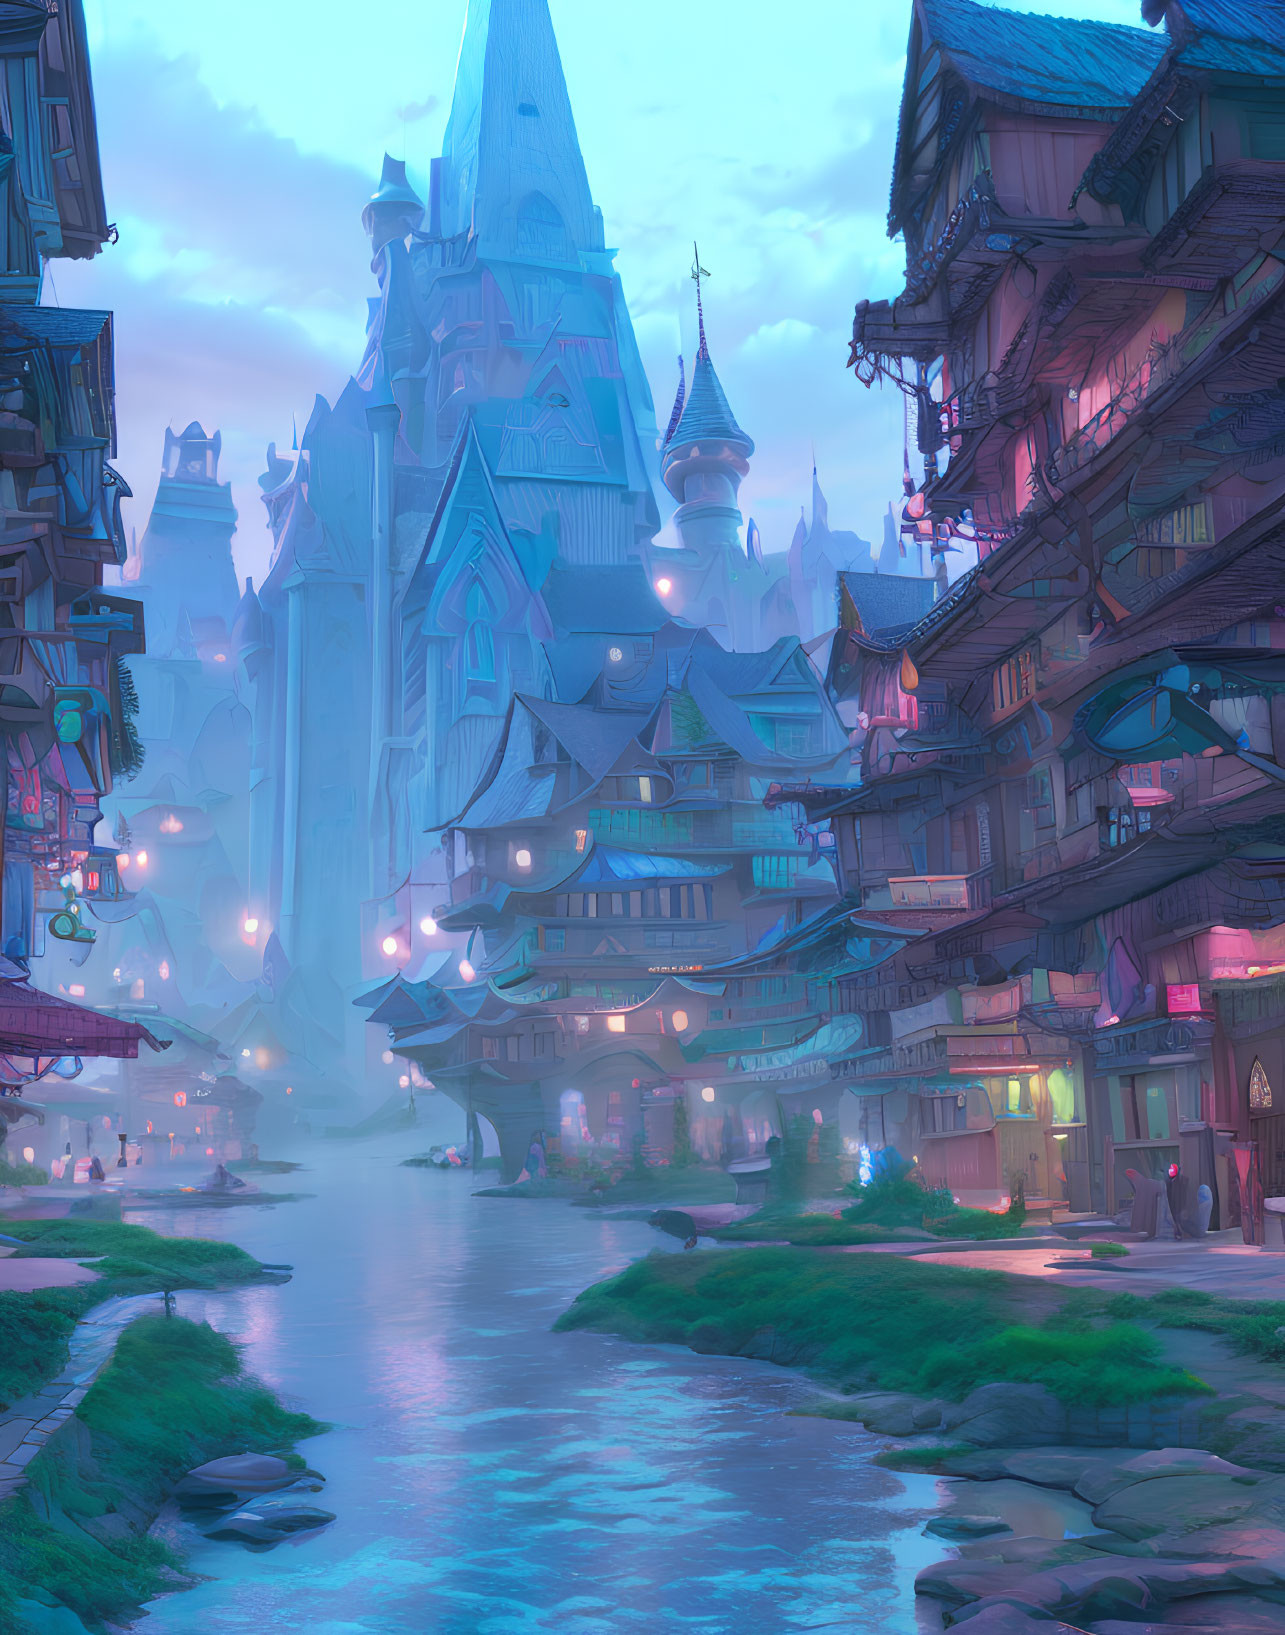 Illuminated Fantasy Cityscape at Dusk